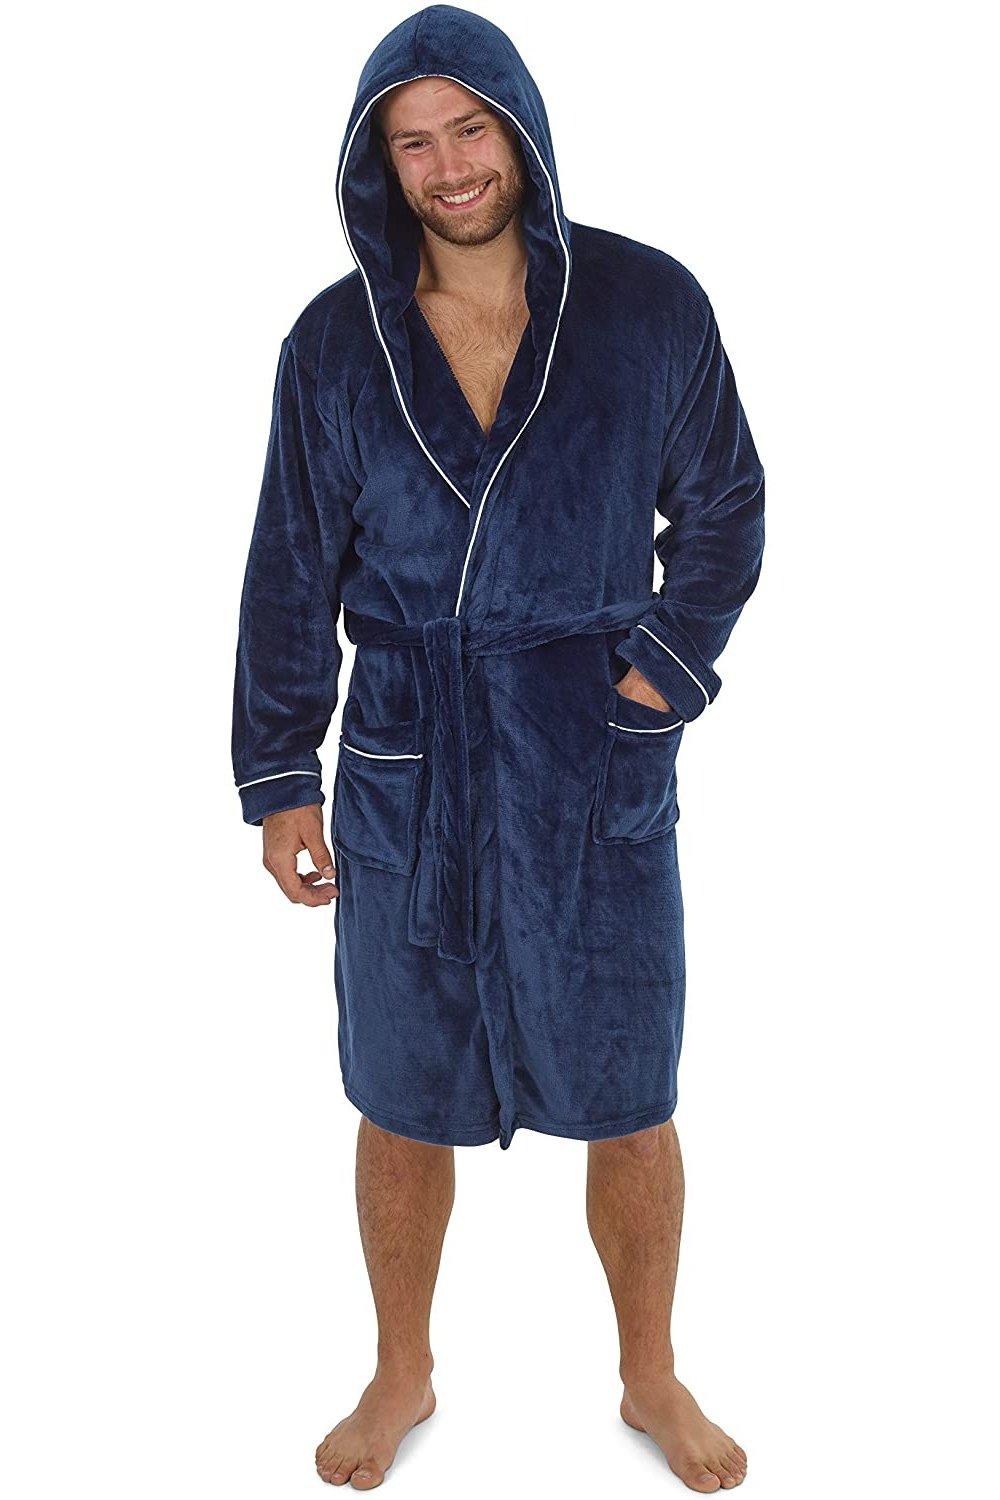 Пышный халат с капюшоном CityComfort, синий мужской халат с капюшоном ночной халат зимний теплый длинный флисовый халат домашняя одежда с поясом